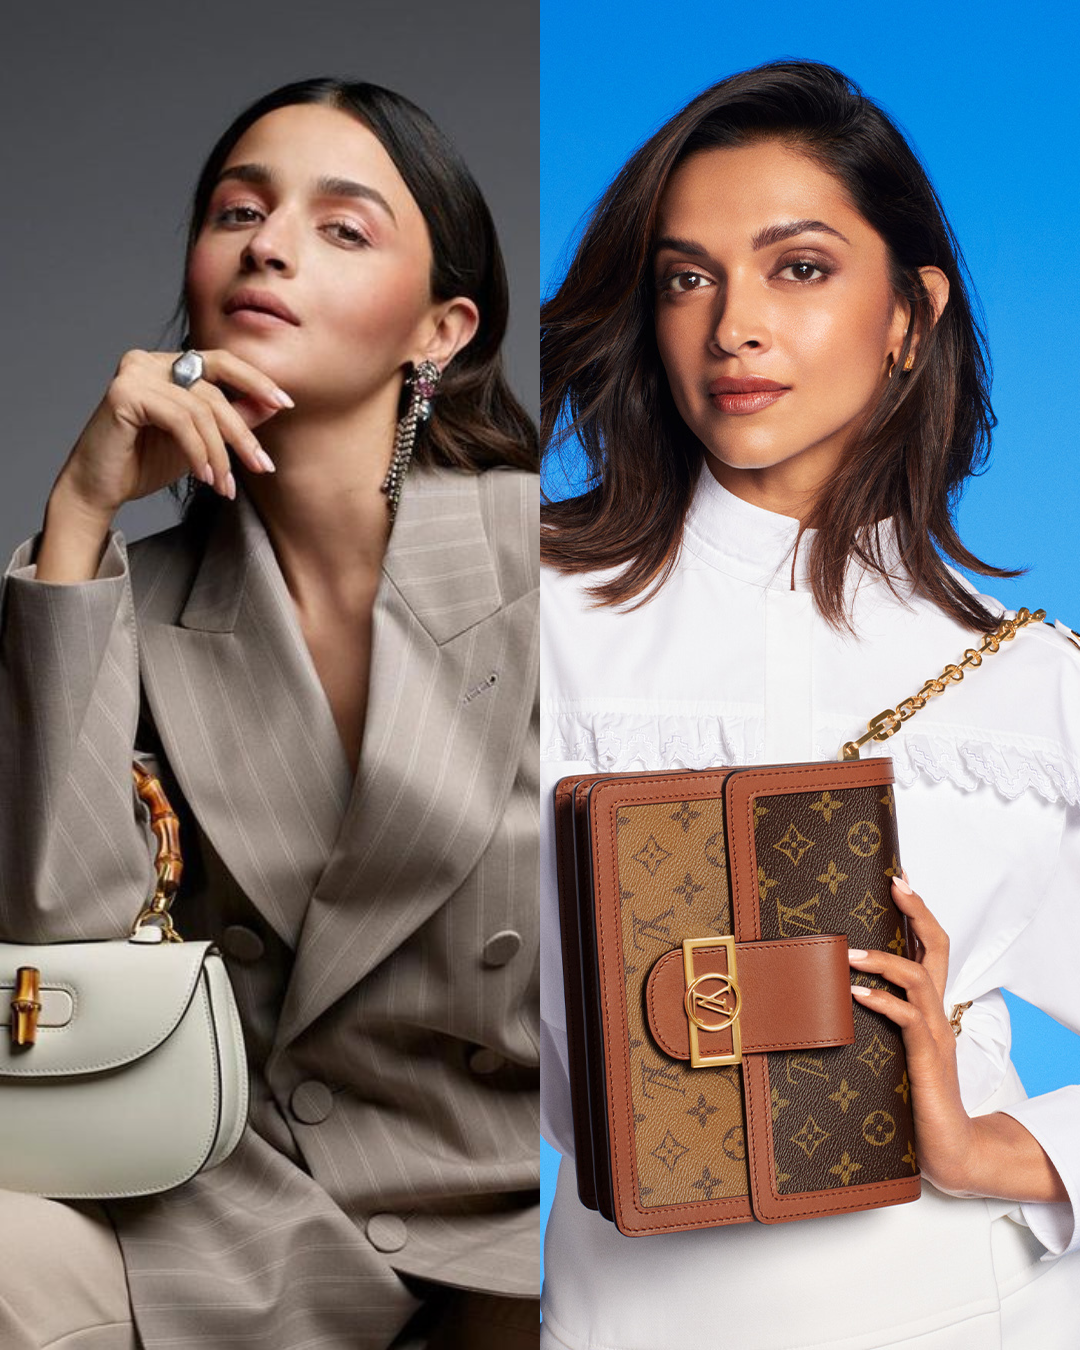 Deepika Padukone is Louis Vuitton's first Indian ambassador